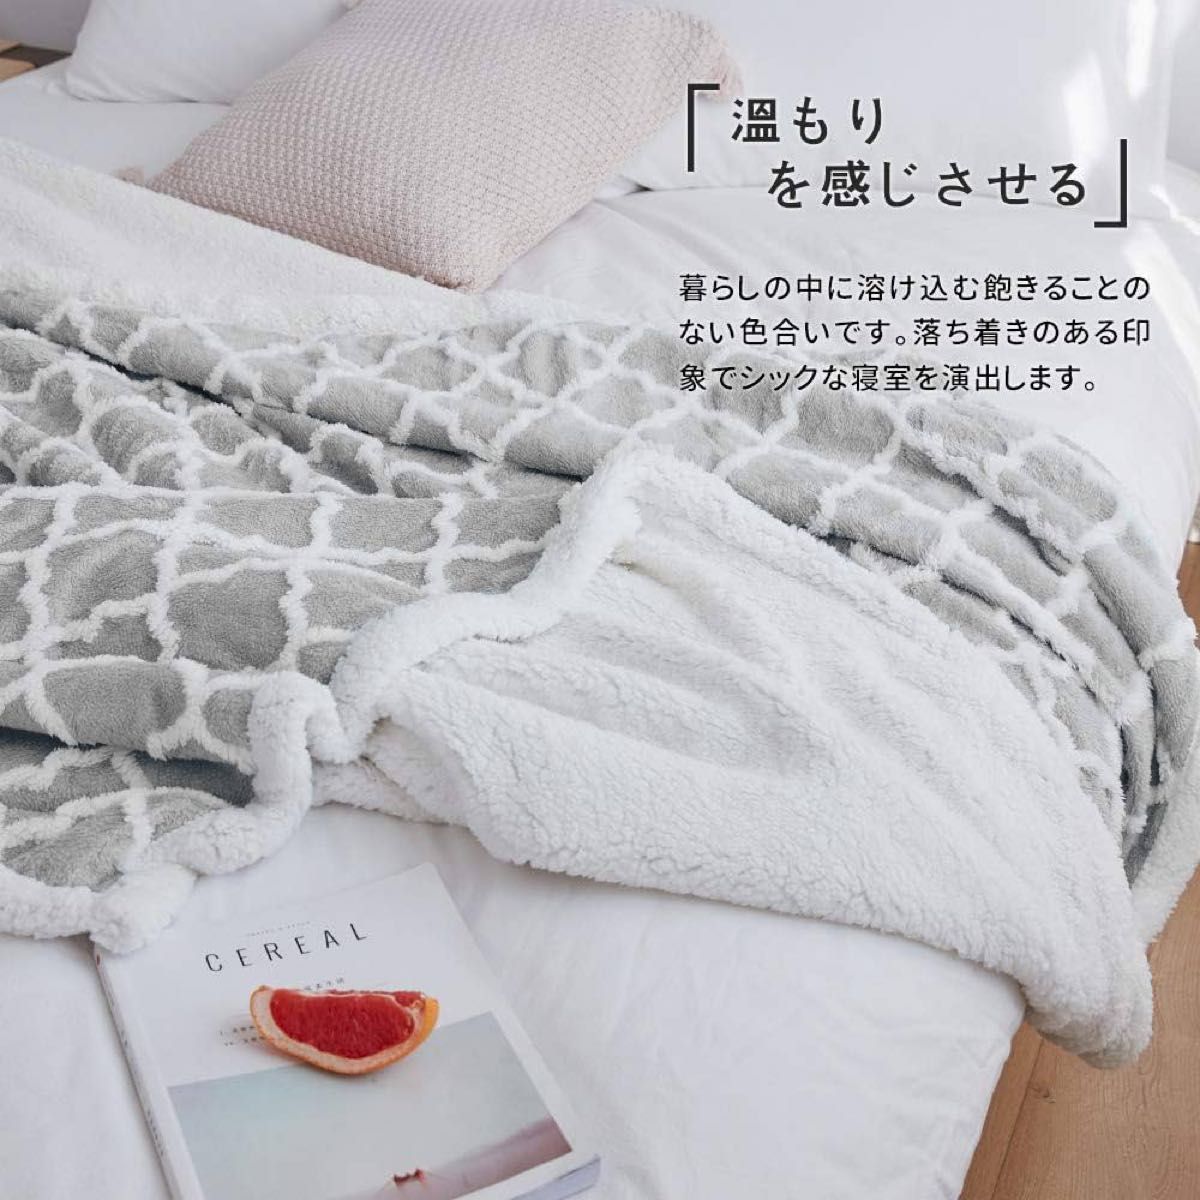 【人気商品】KAWAHOME 二枚合わせ 毛布 セミダブル 160ⅹ200cm